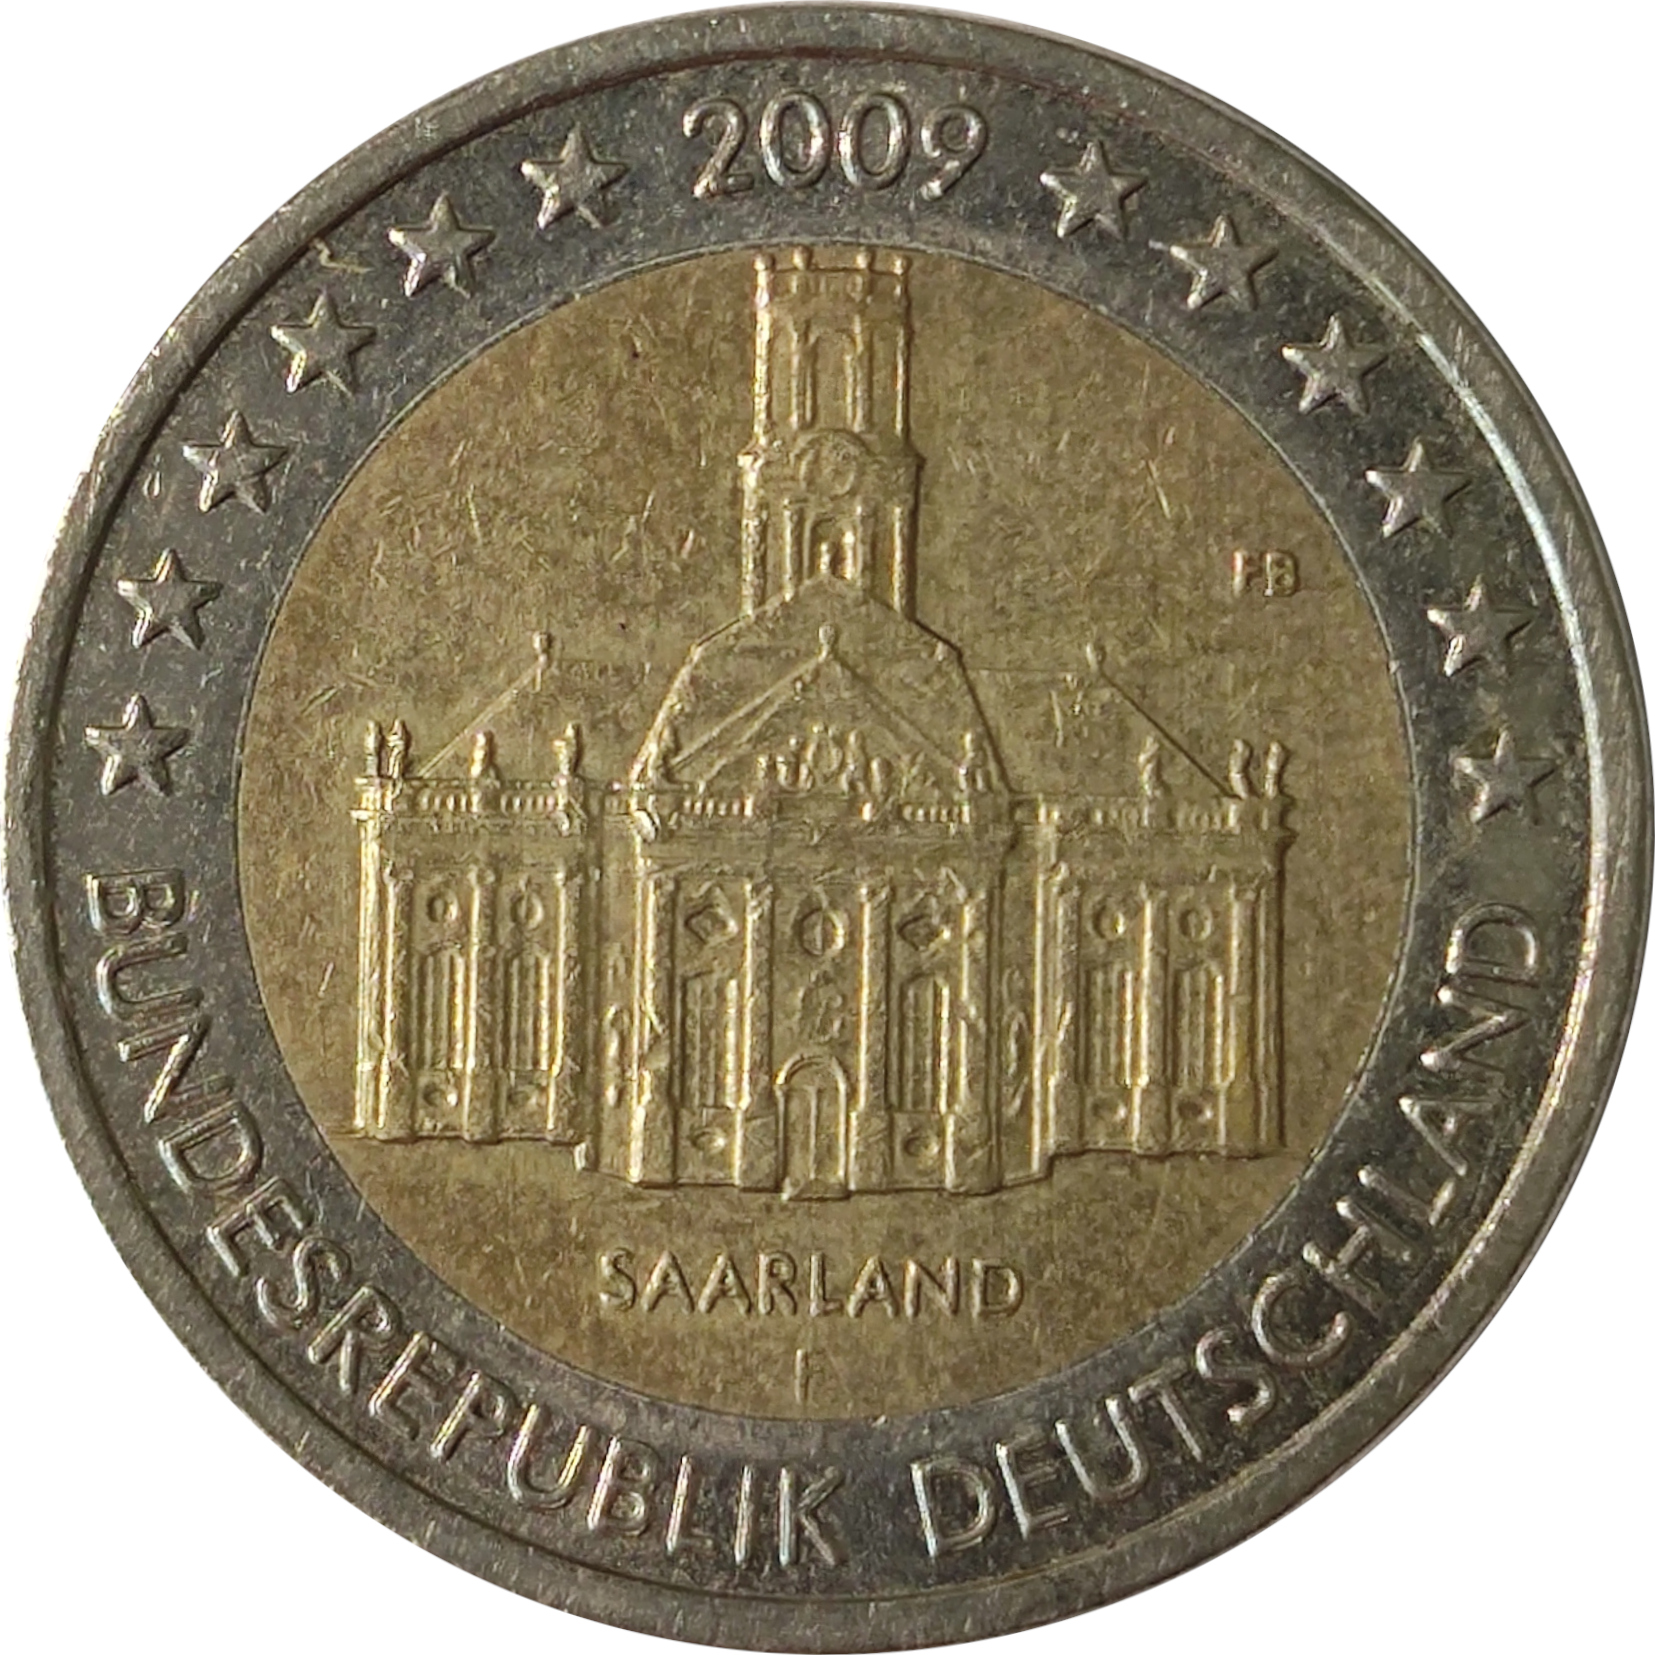 2 euro - Saarland